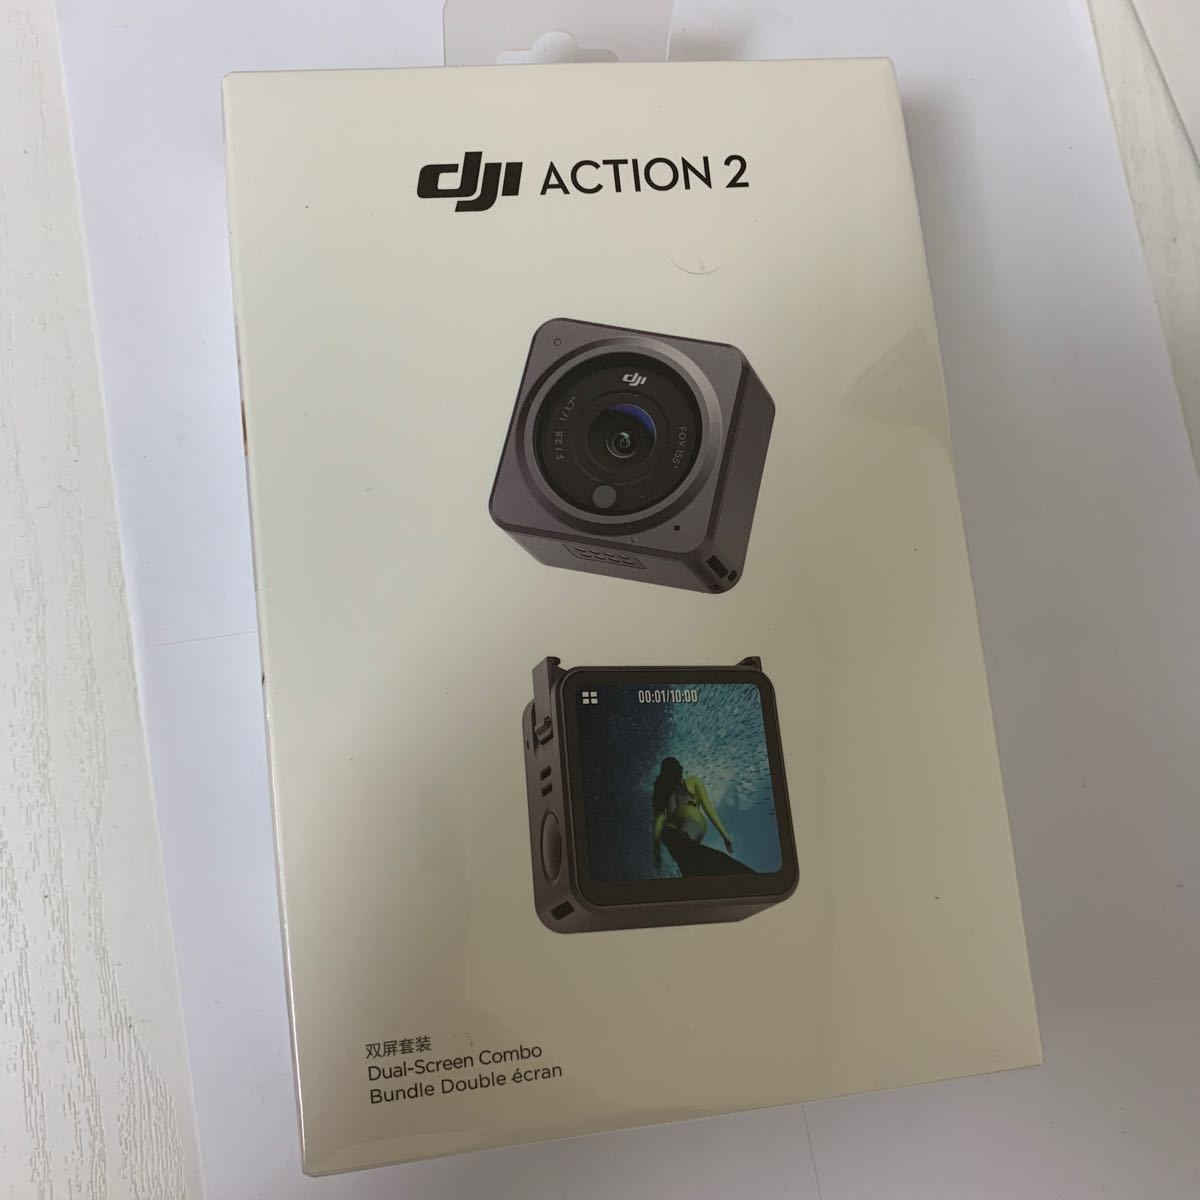 [新品未使用]DJI Action 2 Dual Screenコンボ アクションカメラ 4K デュアル OLED タッチスクリーン 超広角155°FOV ジンバル 磁気で装着 _画像1